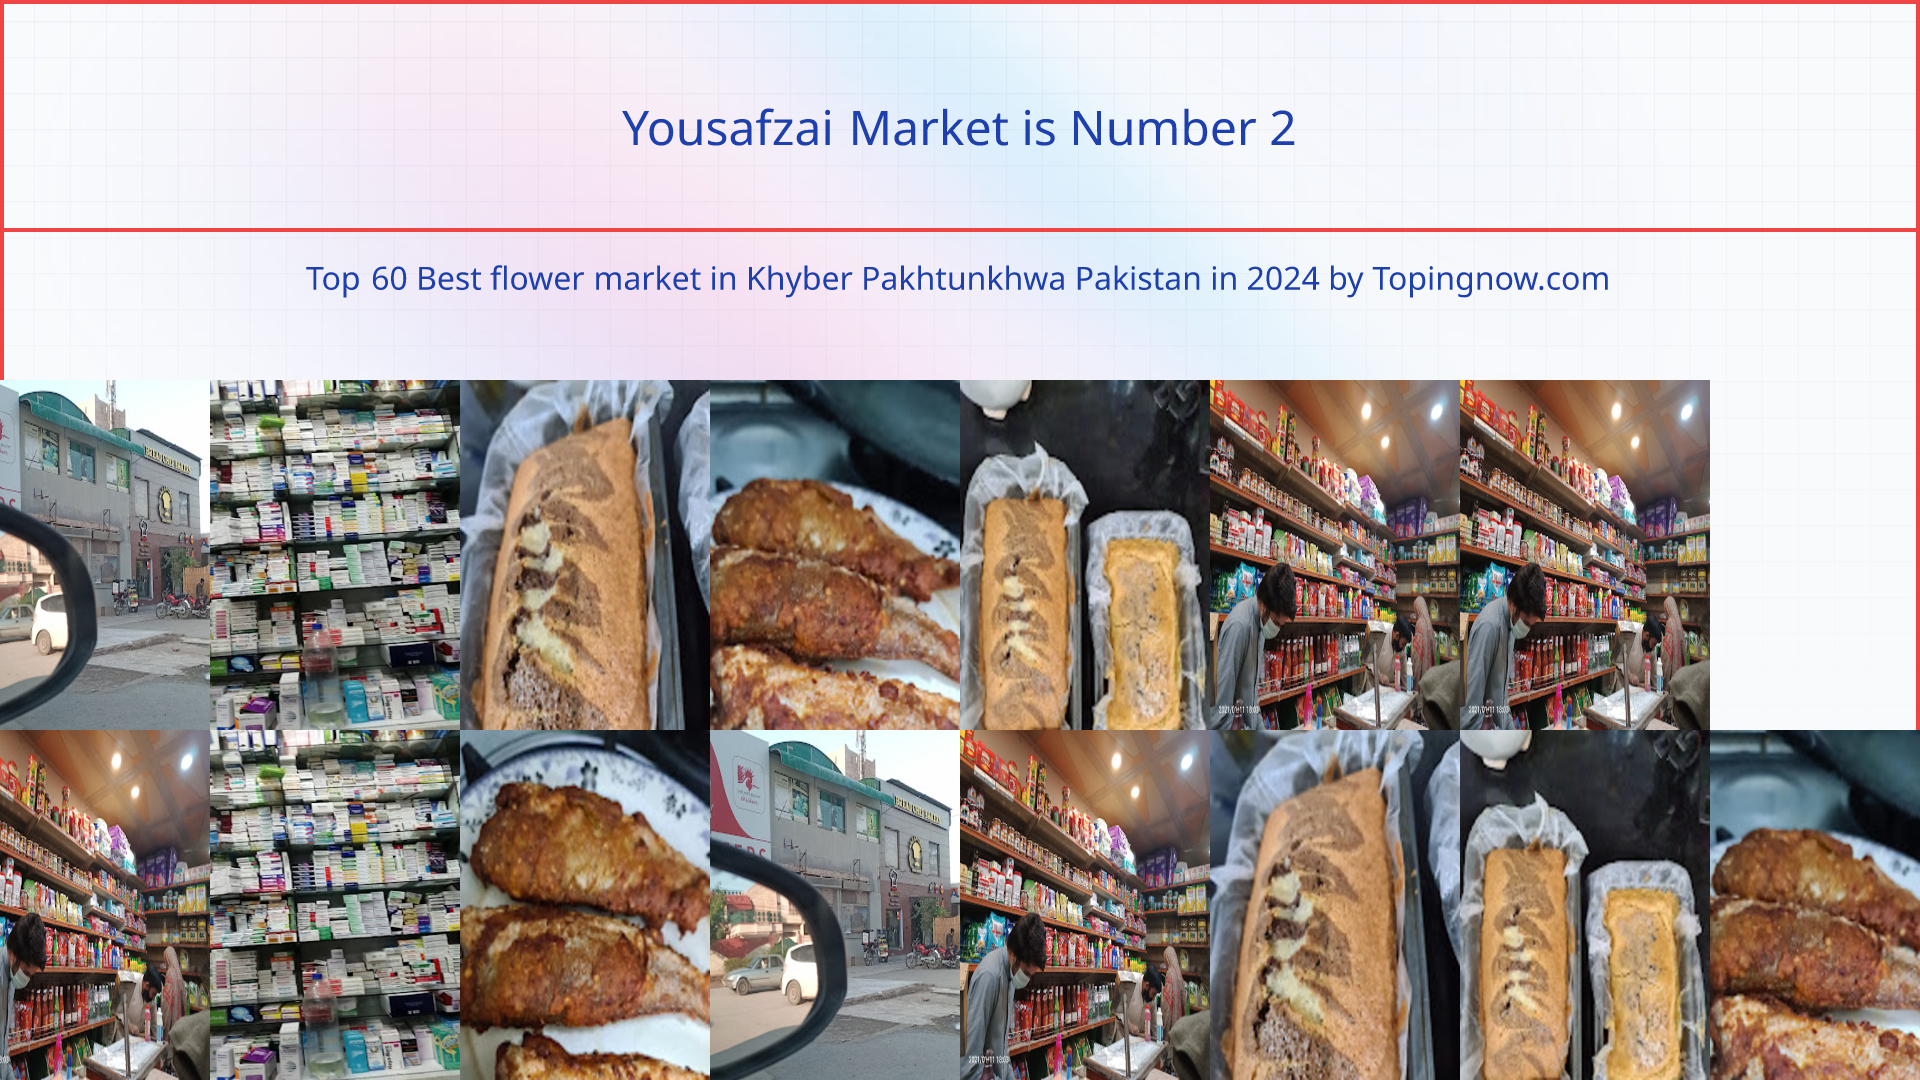 Yousafzai Market: Top 60 Best flower market in Khyber Pakhtunkhwa Pakistan in 2024